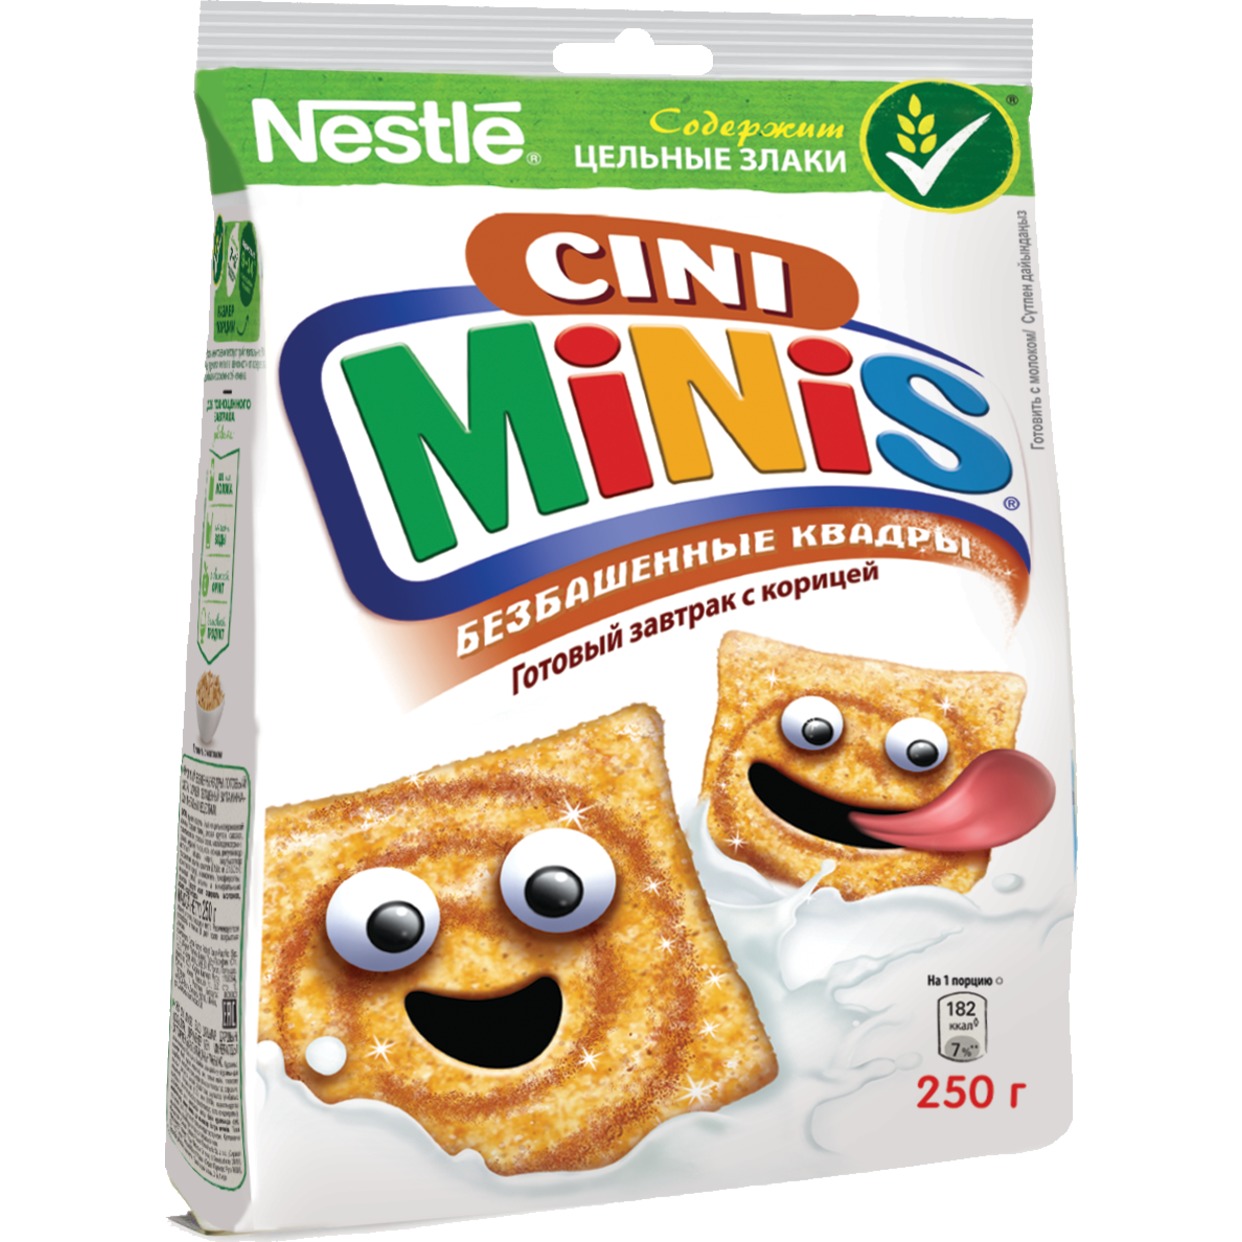 Готовый завтрак Nestle Cini Minis, безбашенные квадры, с корицей, 250 г по акции в Пятерочке